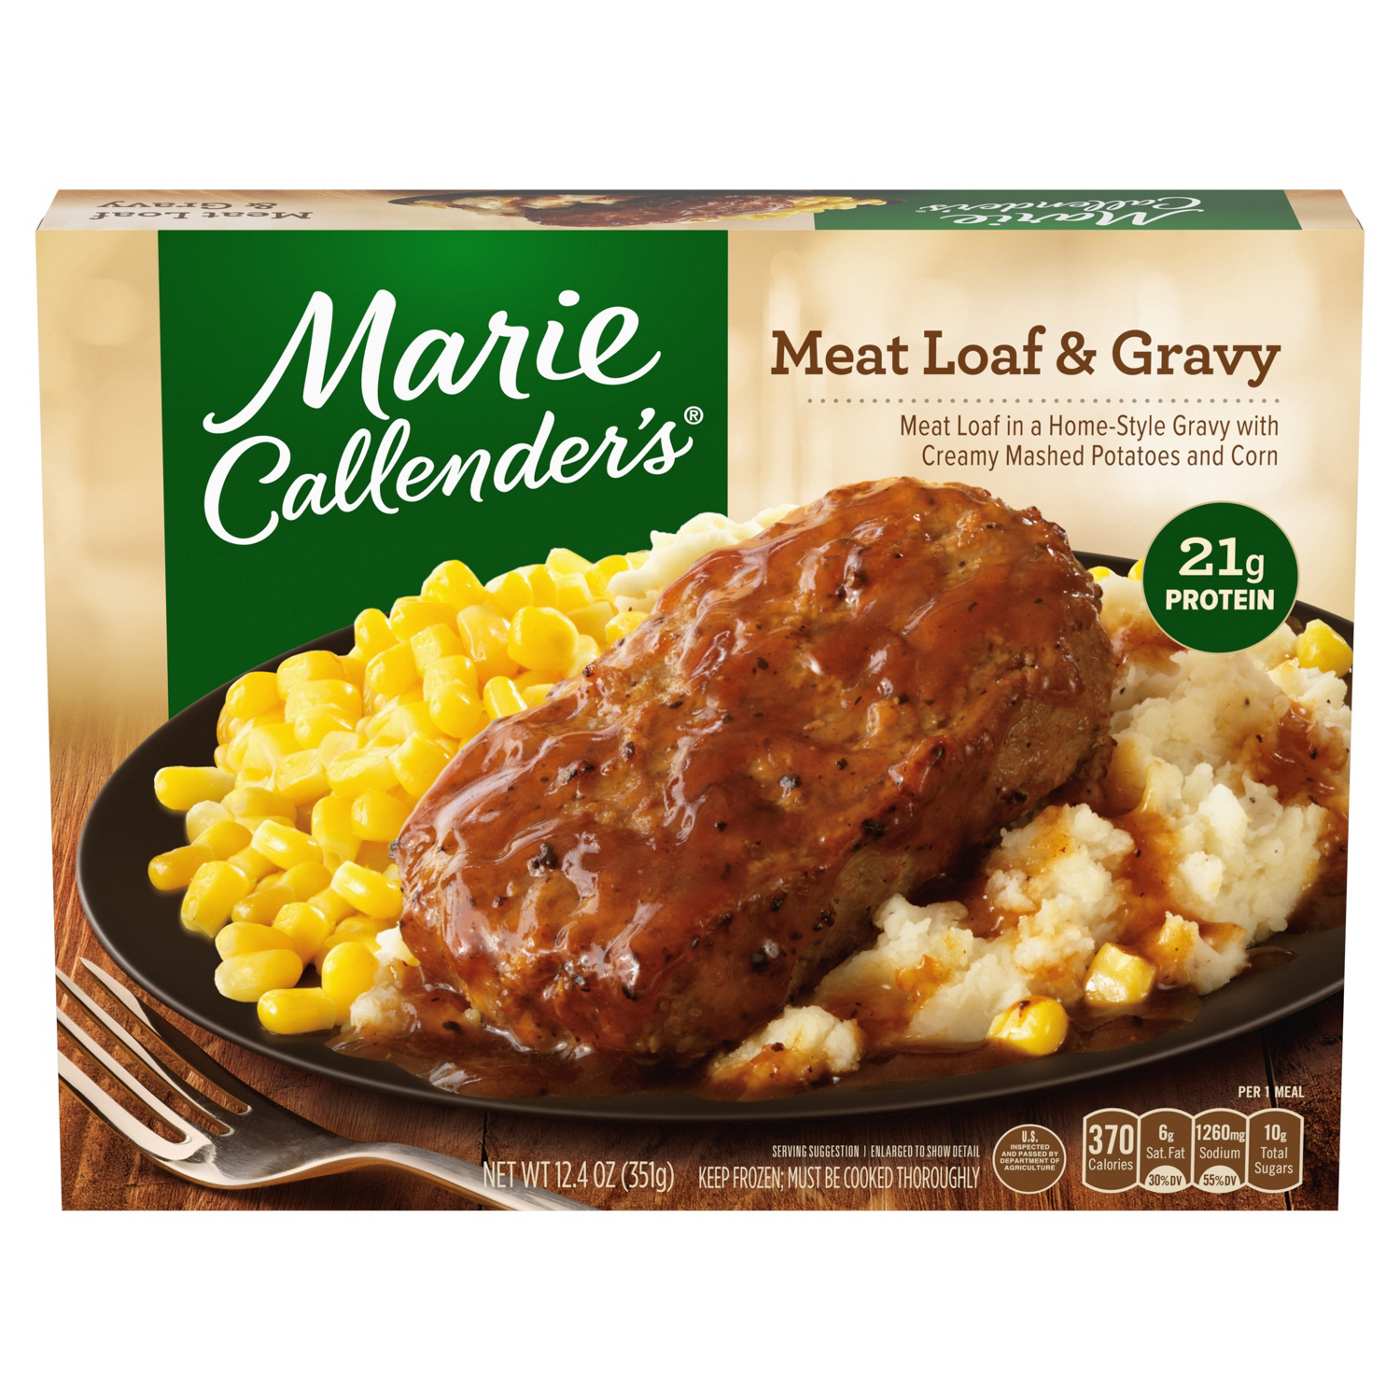 Marie Callender's Meatloaf & Gravy Frozen Meal; image 1 of 3